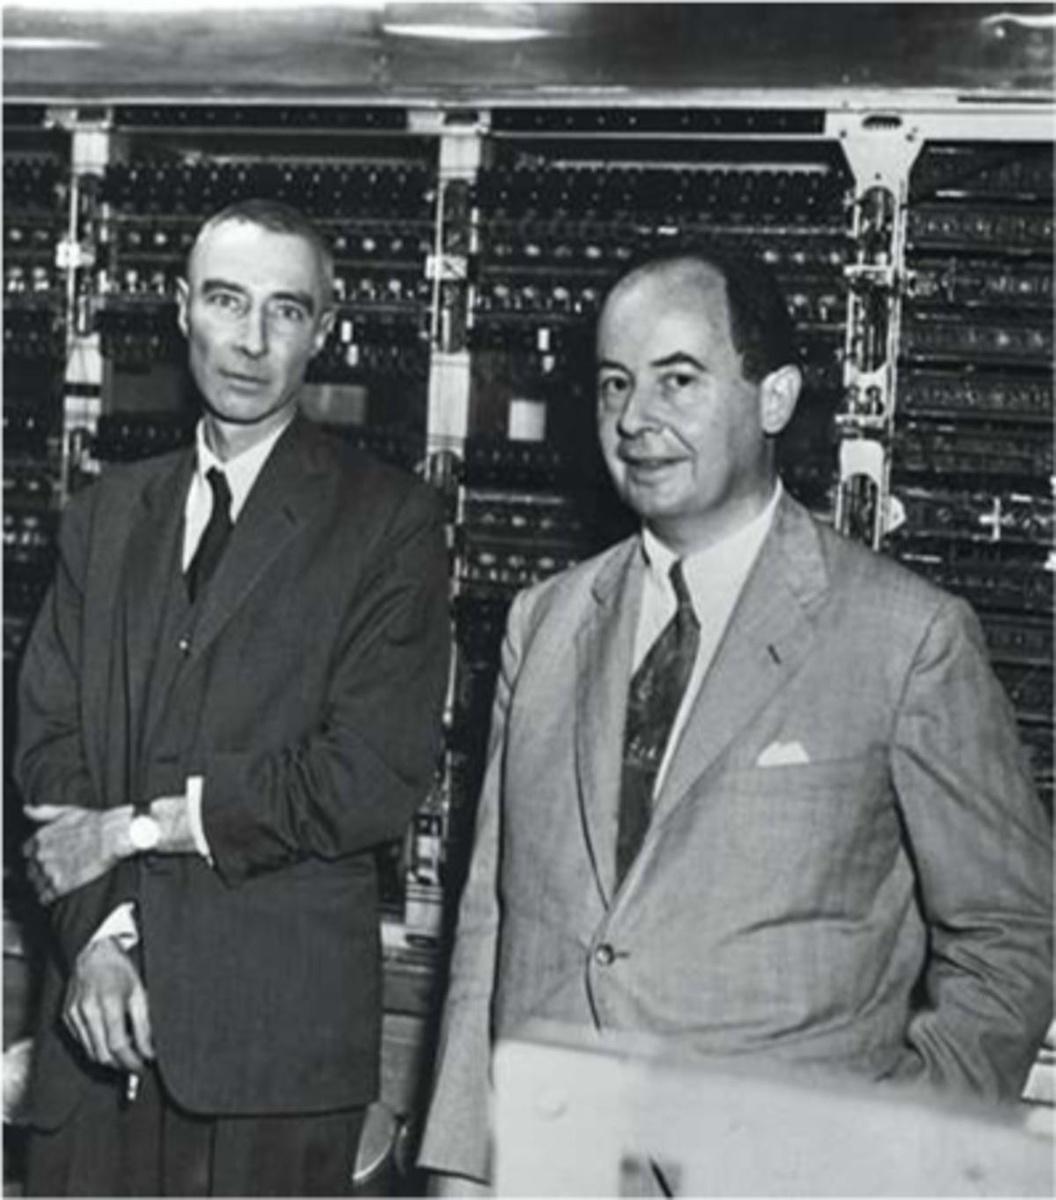 1952: Robert Oppenheimer en John Von Neumann samen voor een computating machine of computer om snelle berekeningen te maken.